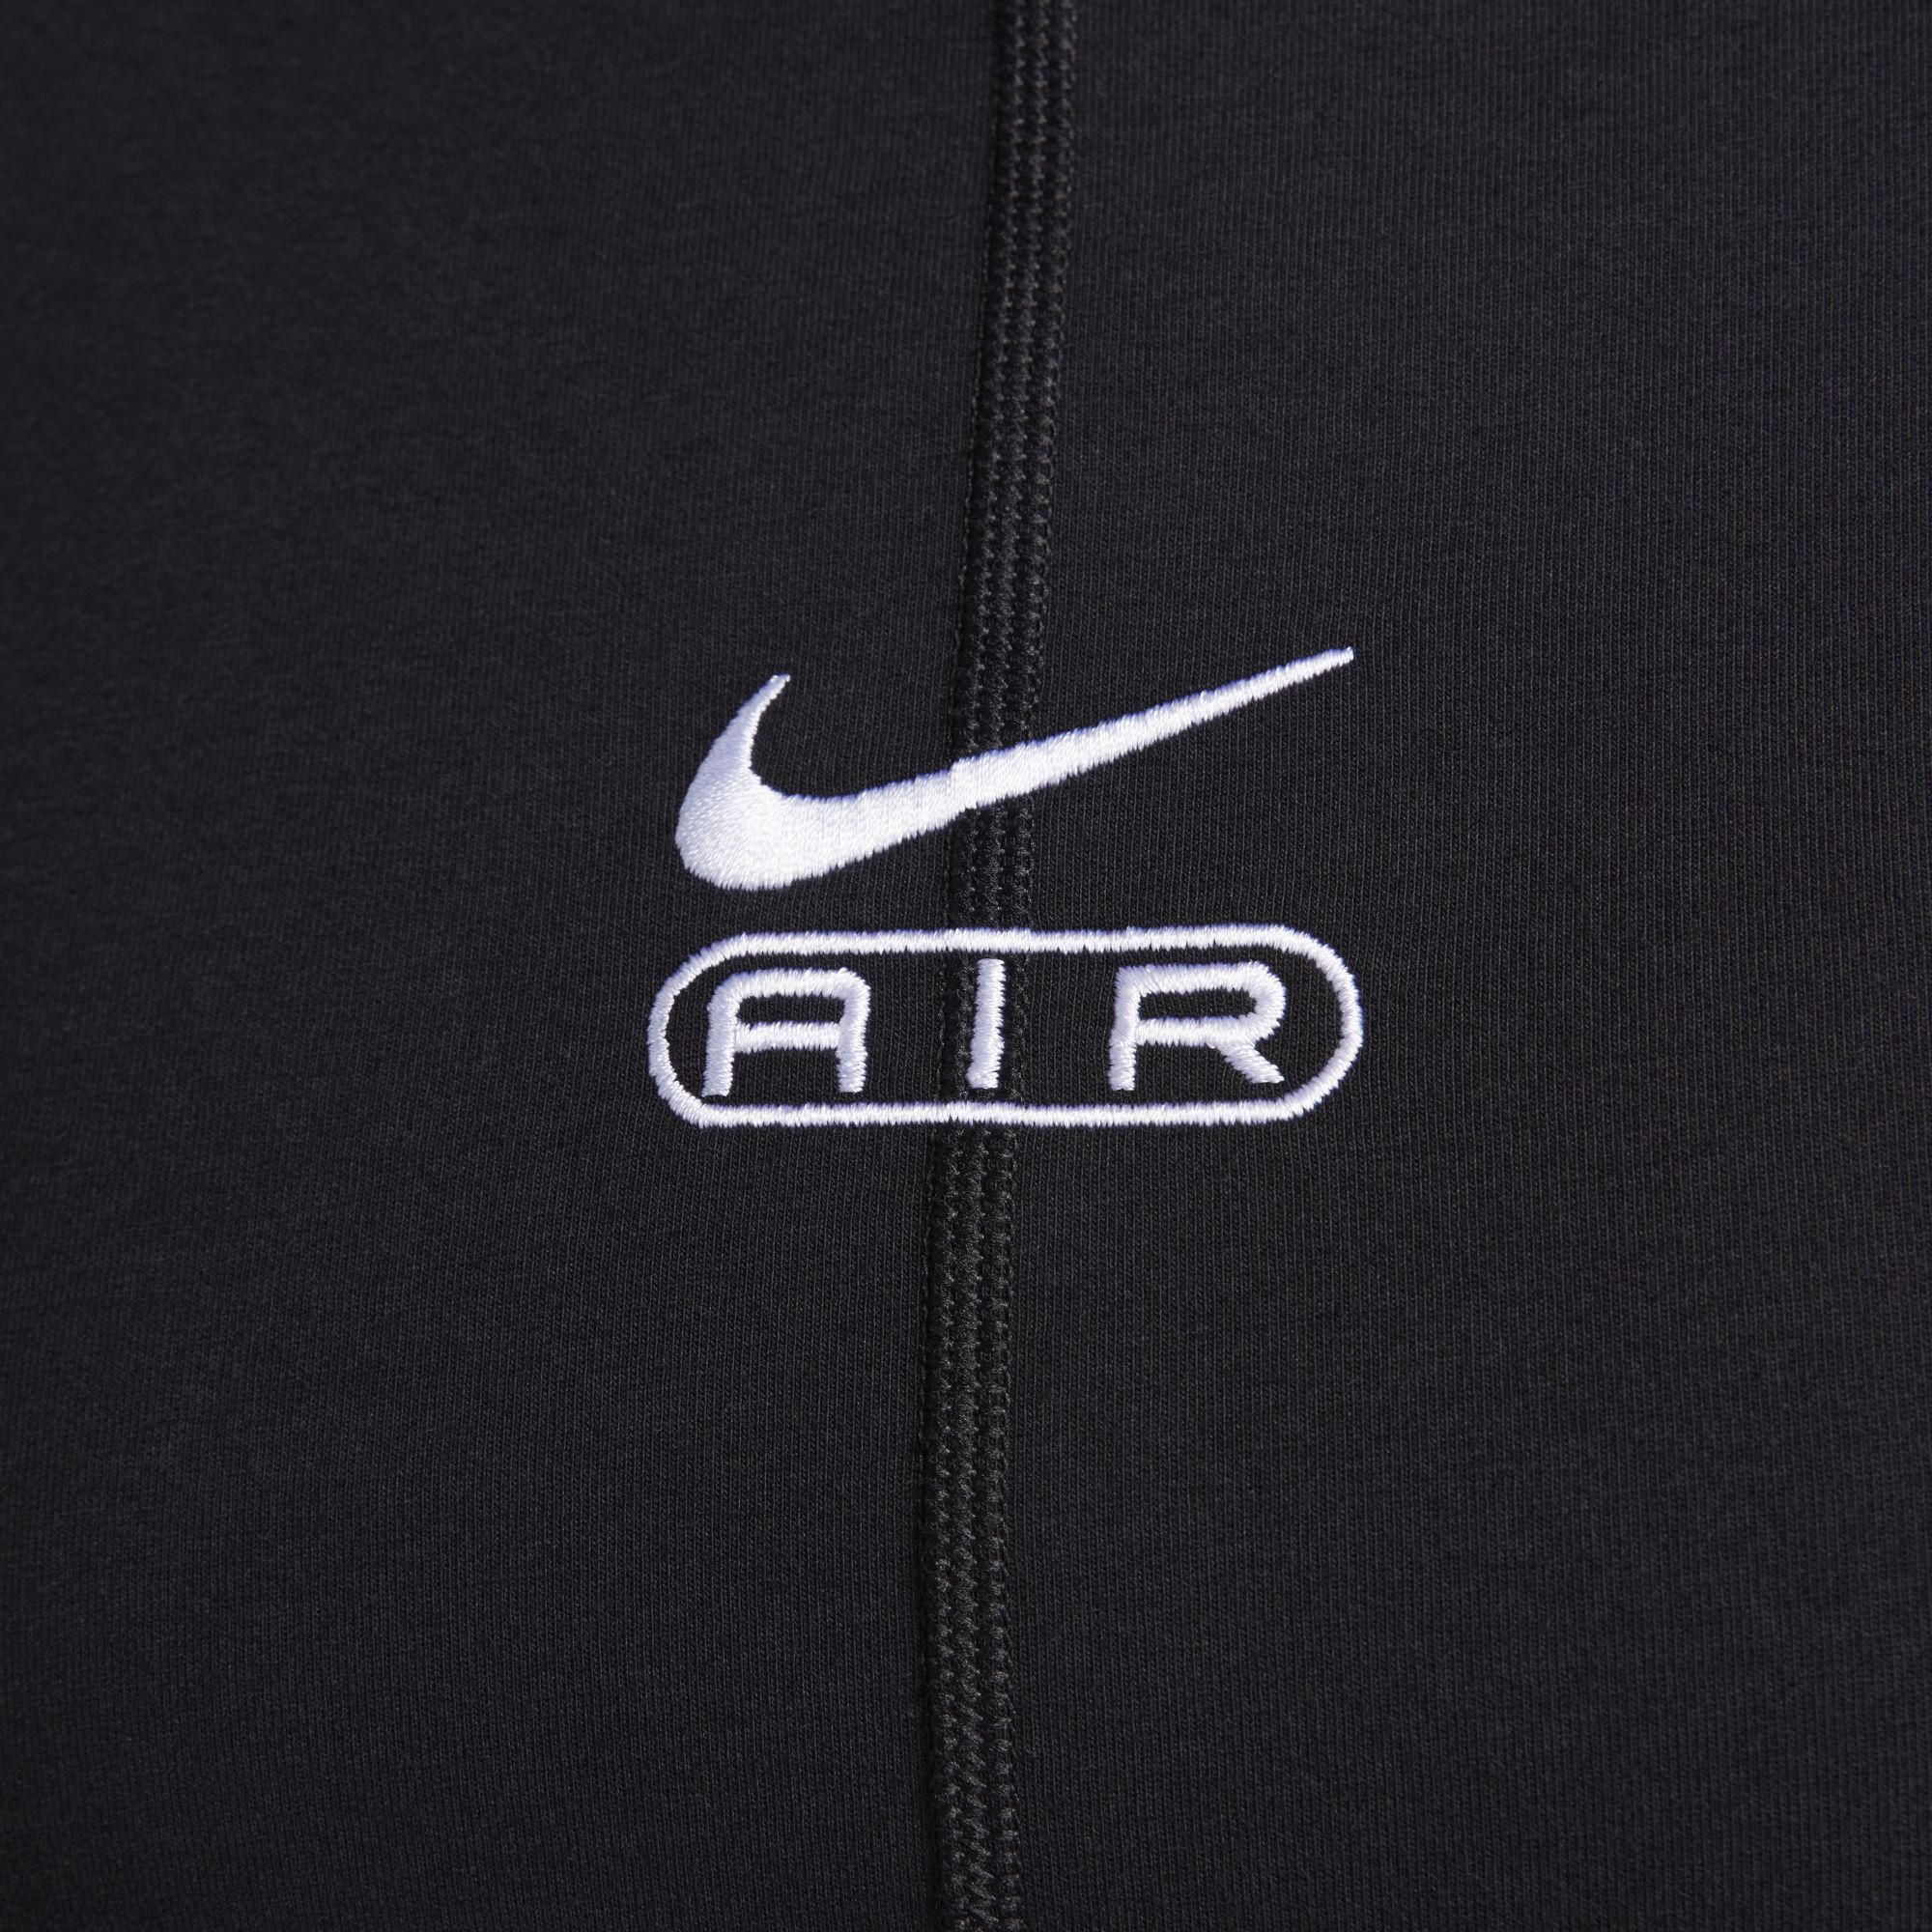 Nike Air, Negro/Blanco, hi-res